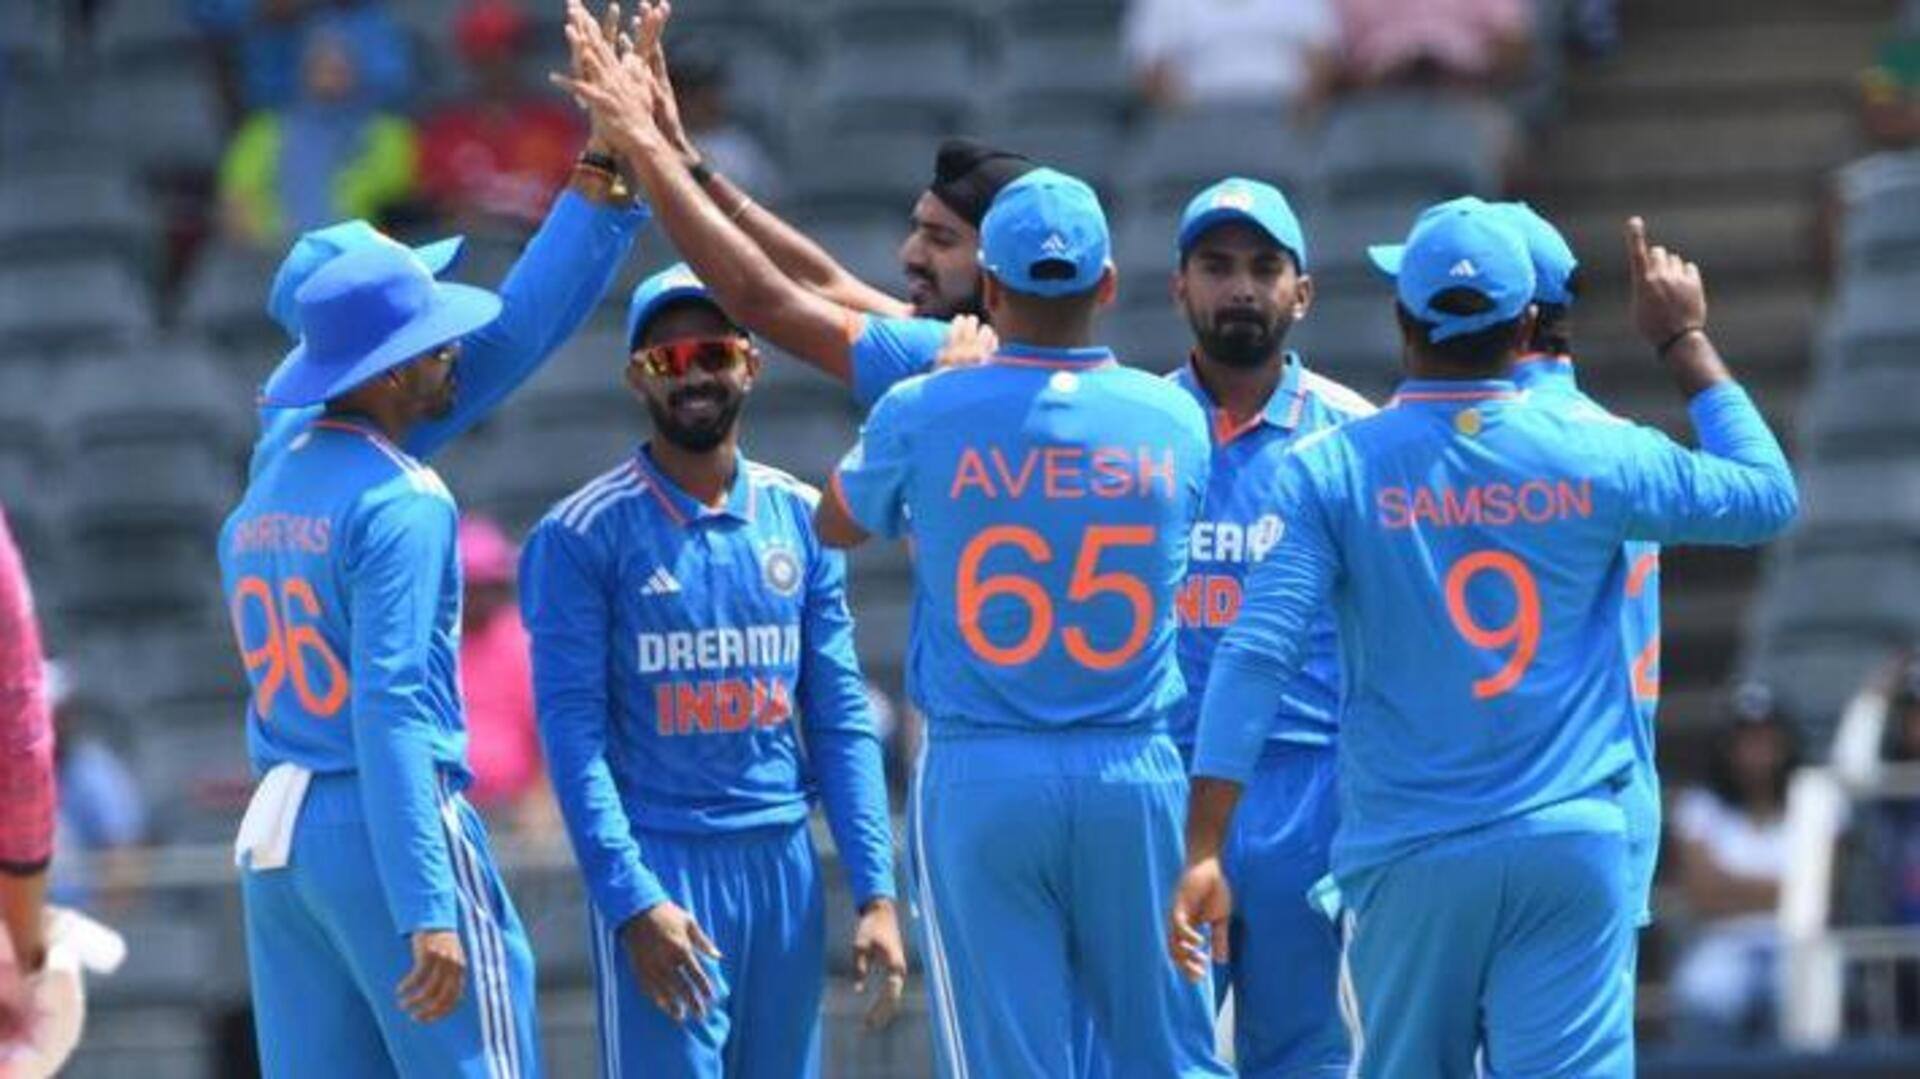 இந்தியா vs தென்னாப்பிரிக்கா முதல் ODI : 8 விக்கெட் வித்தியாசத்தில் இந்தியா அபார வெற்றி